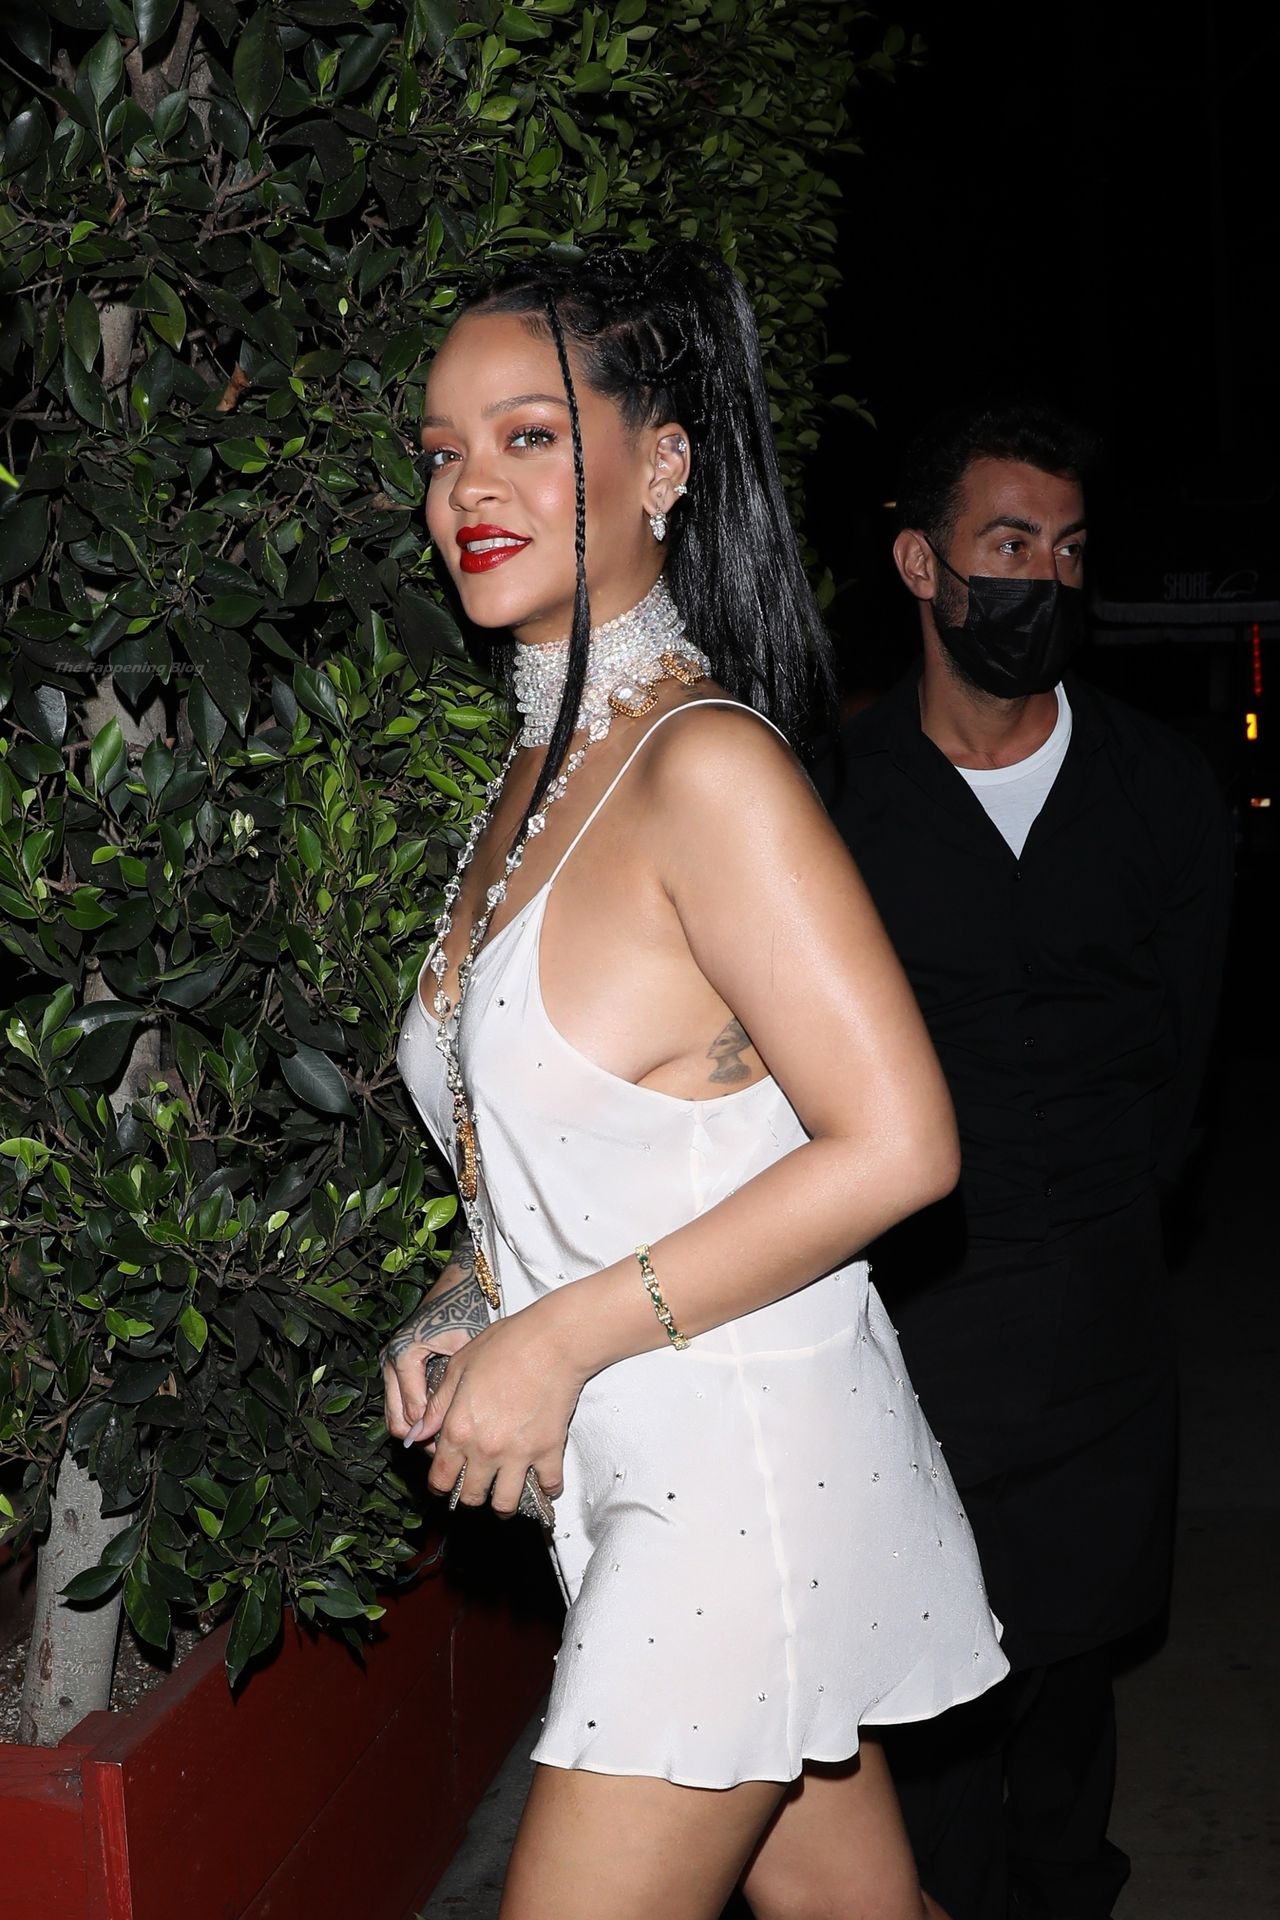 Rihanna-Braless-The-Fappening-Blog-13.jpg